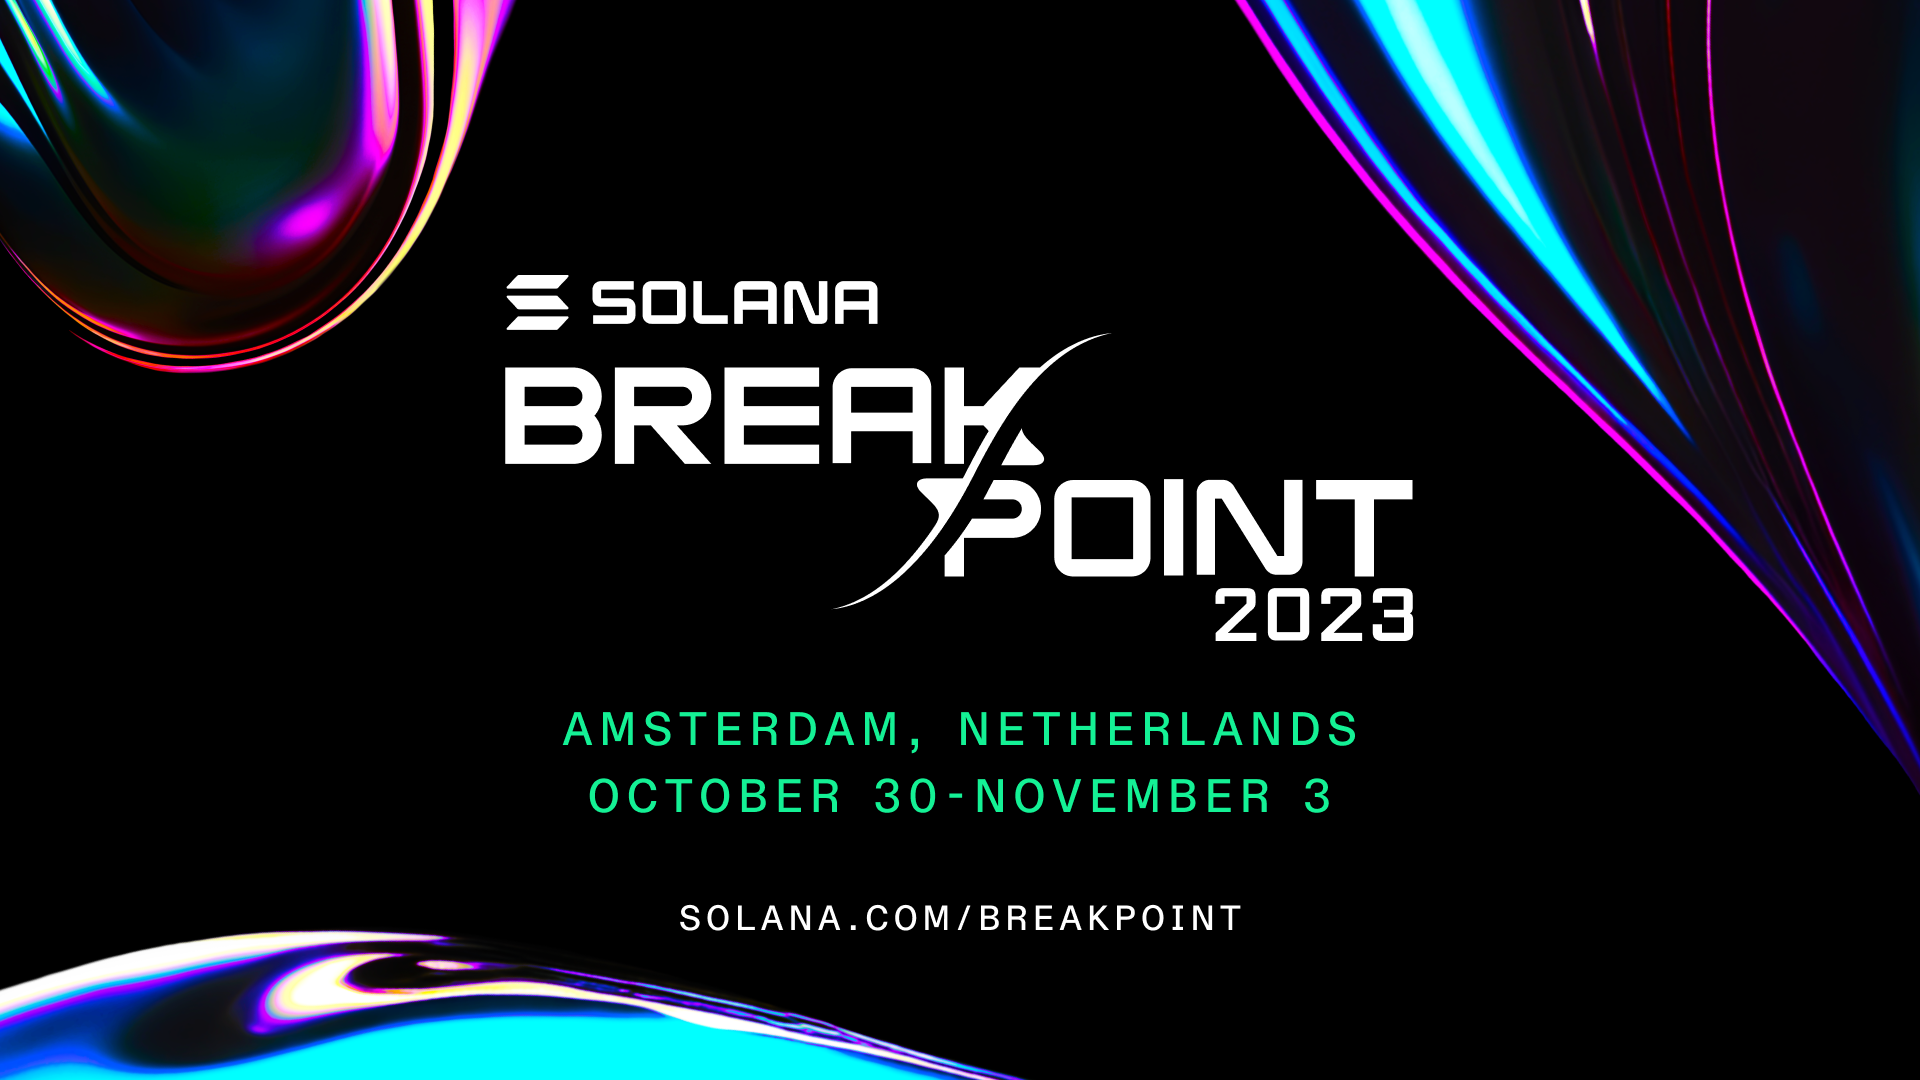 Solana Breakpoint 2023 Amsterdam TChCxg - Solana of[^[nYI̋JÂ